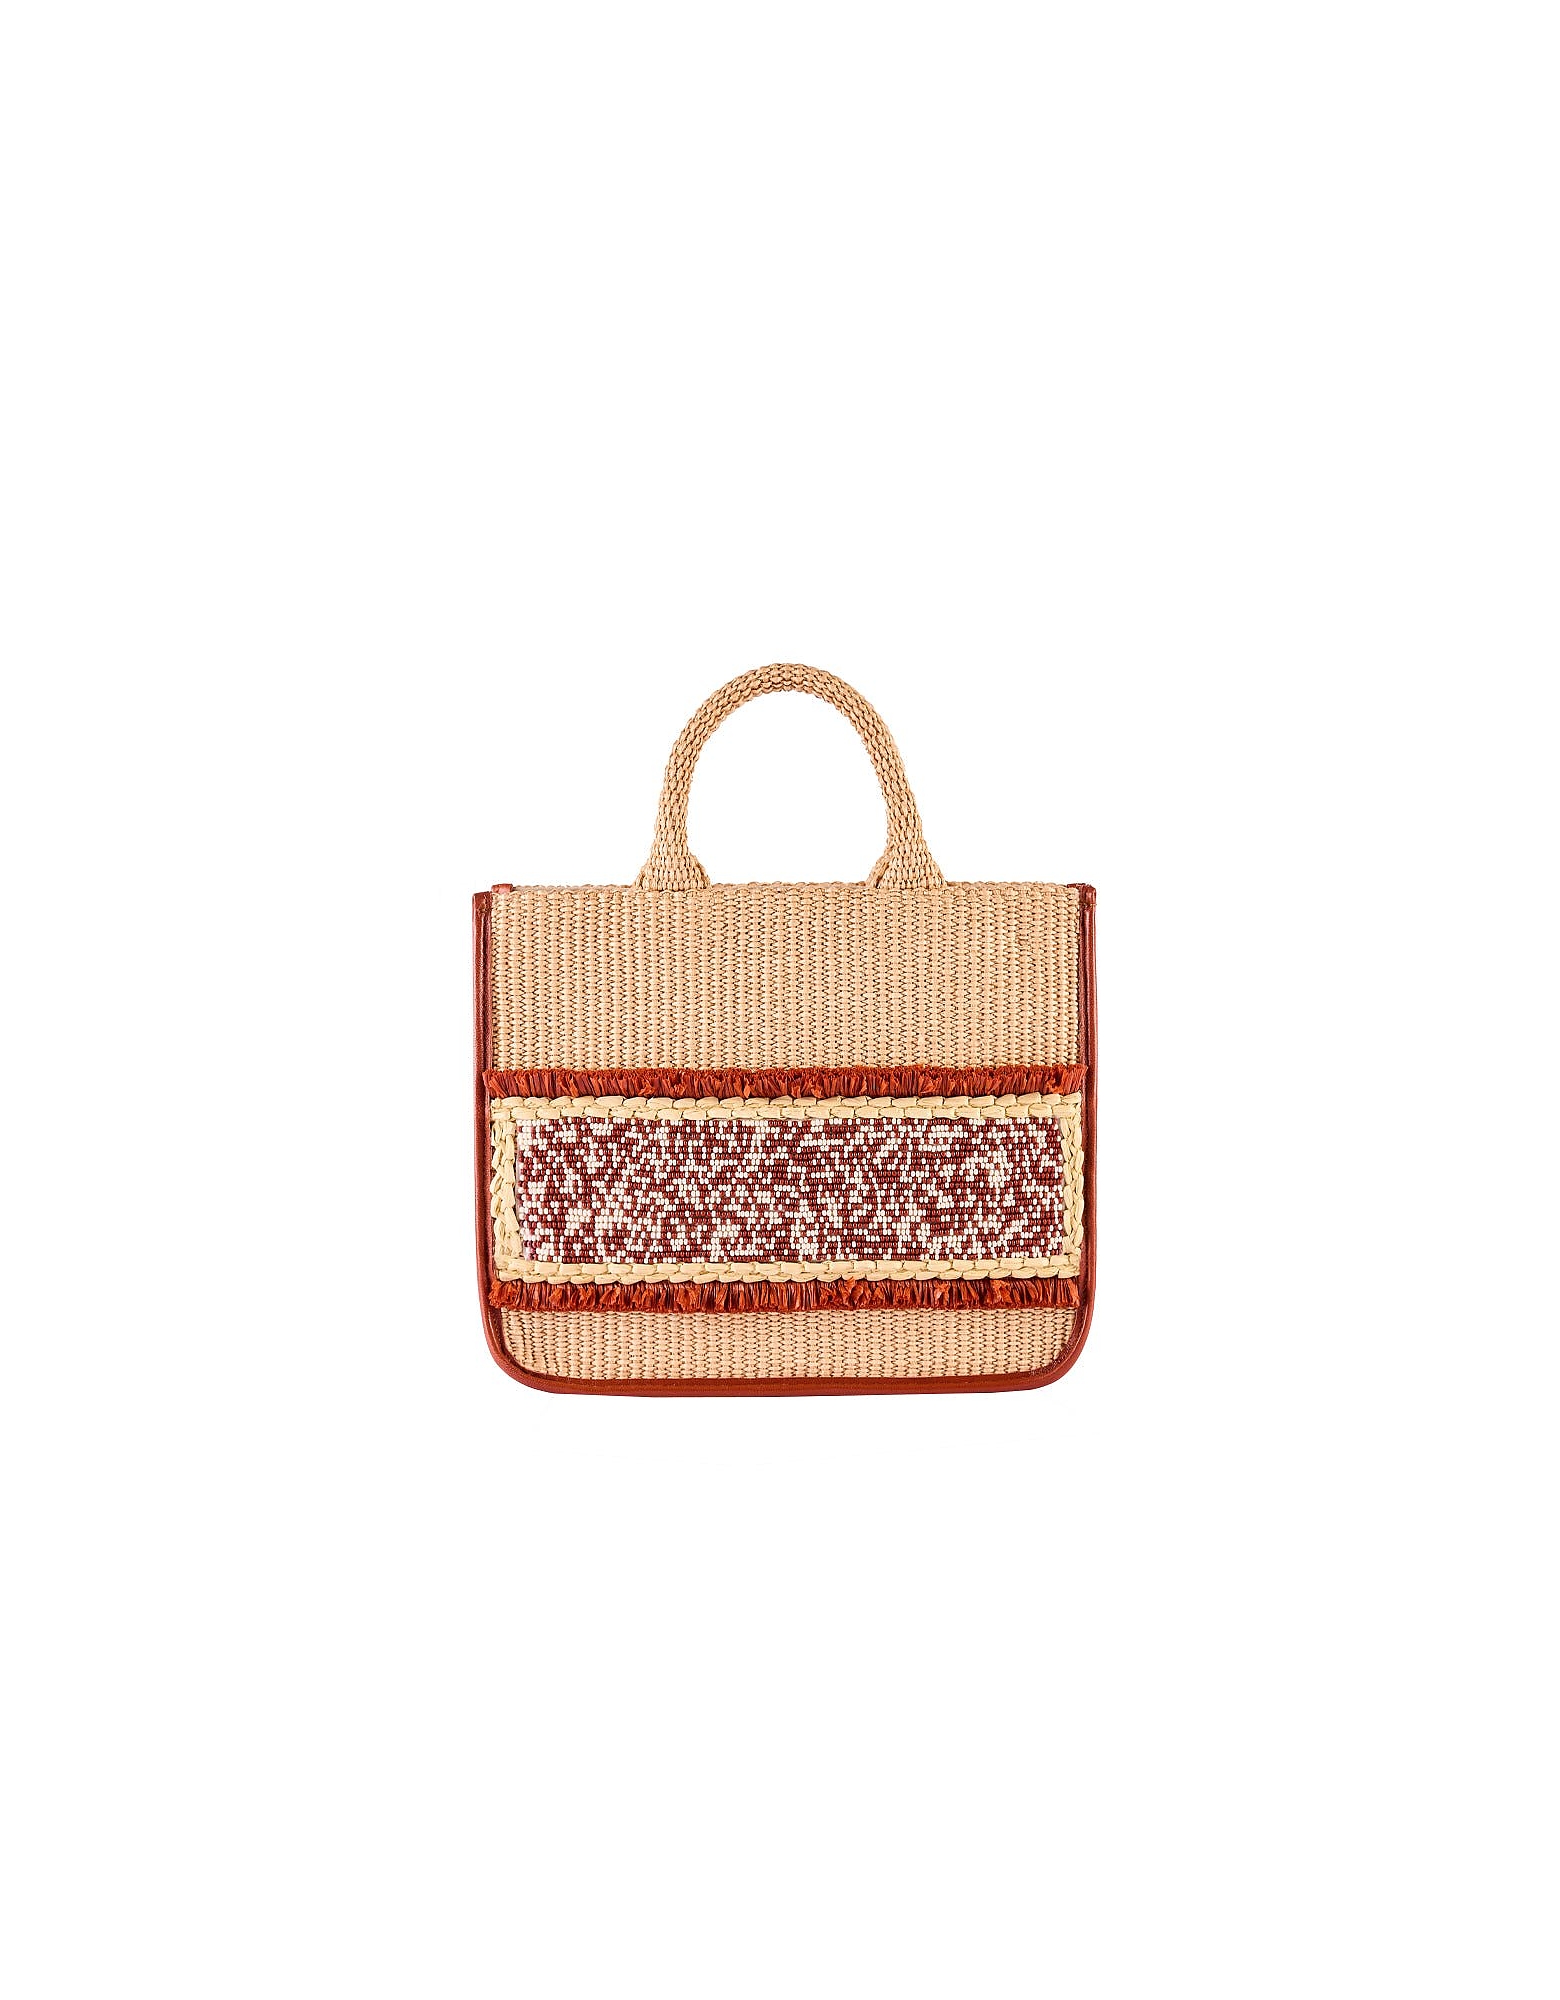 Viamailbag Designer Handbags Keros Rafia - Top Handle Bag In Neutres